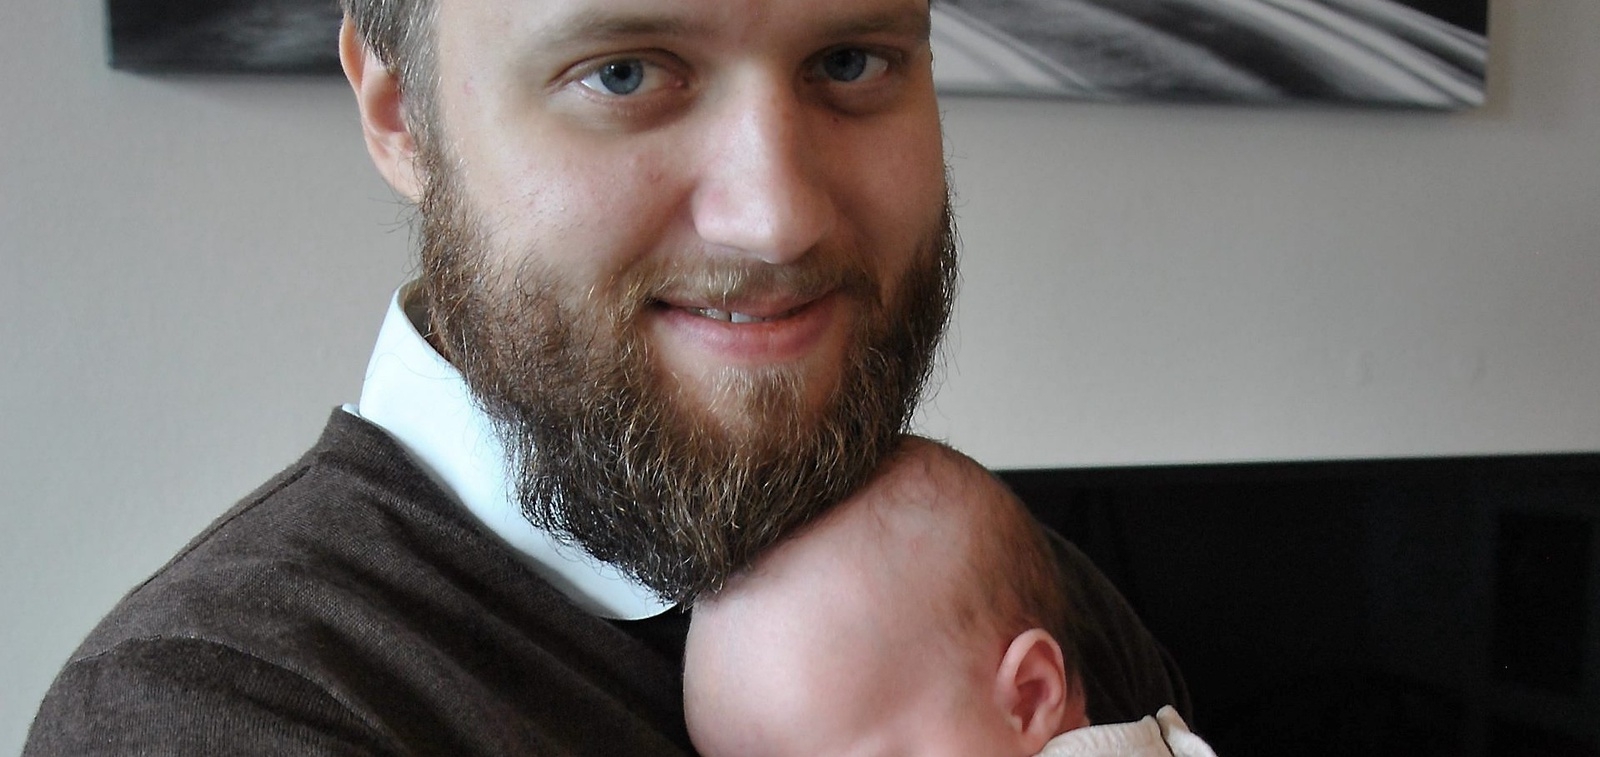 Noomi Rensfelt har hunnit bli två månader gammal och ska snart fira sin pappa för första gången på Fars dag. Den stolta fadern heter Andrée.
Foto: Marie Strömberg Andersson